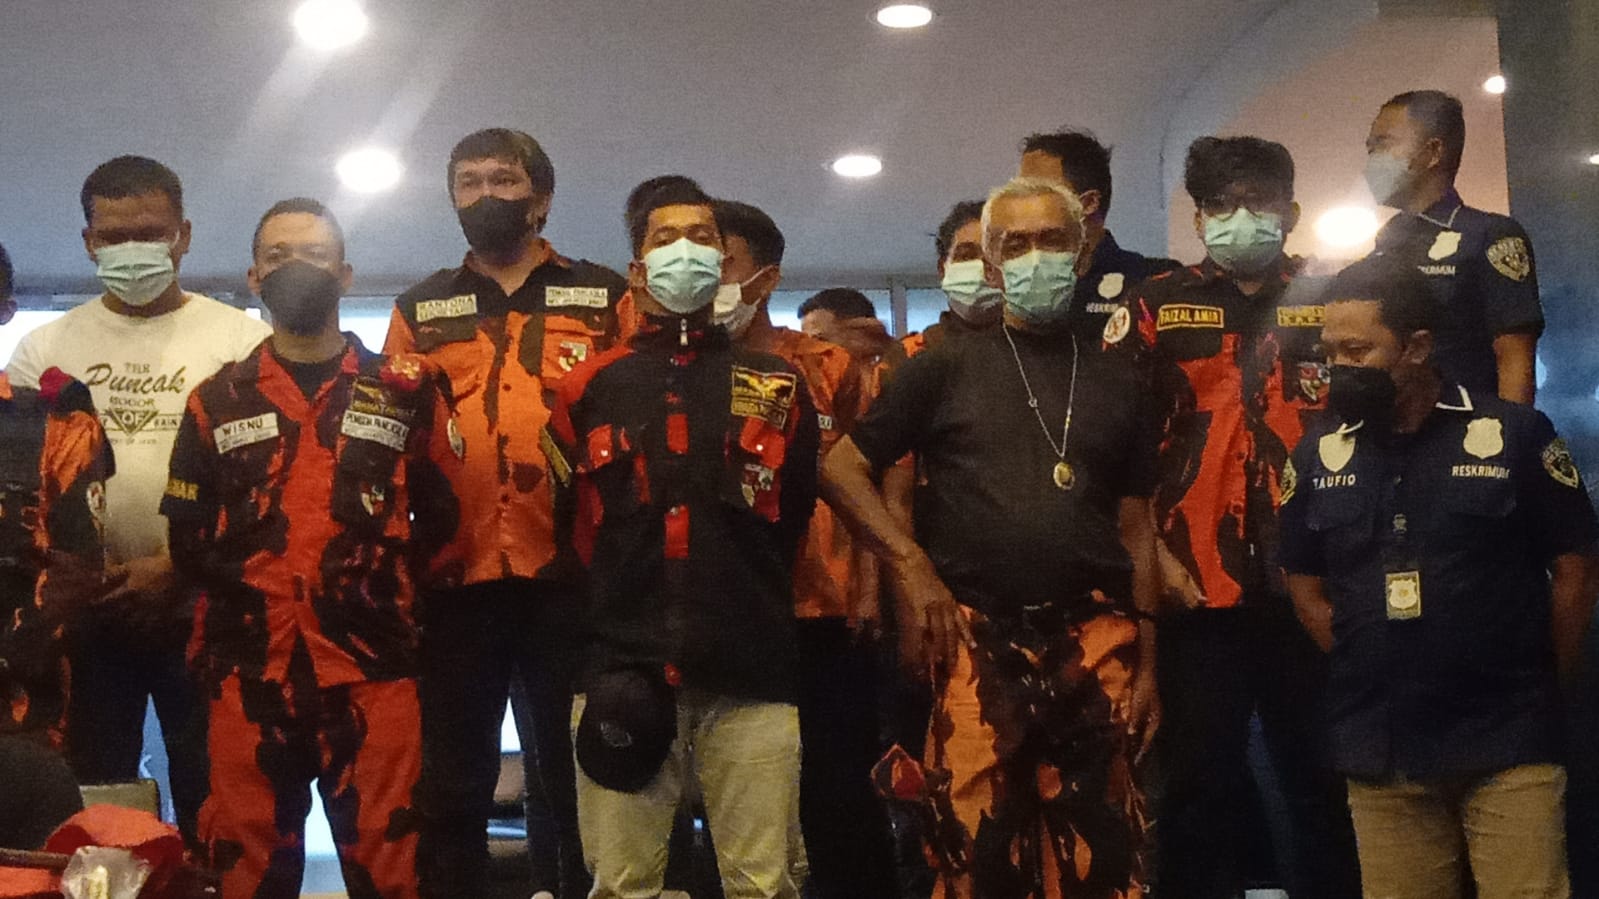 Belasan anggota Pemuda Pancasila yang dijadikan tersangka. (Foto: PMJ News)